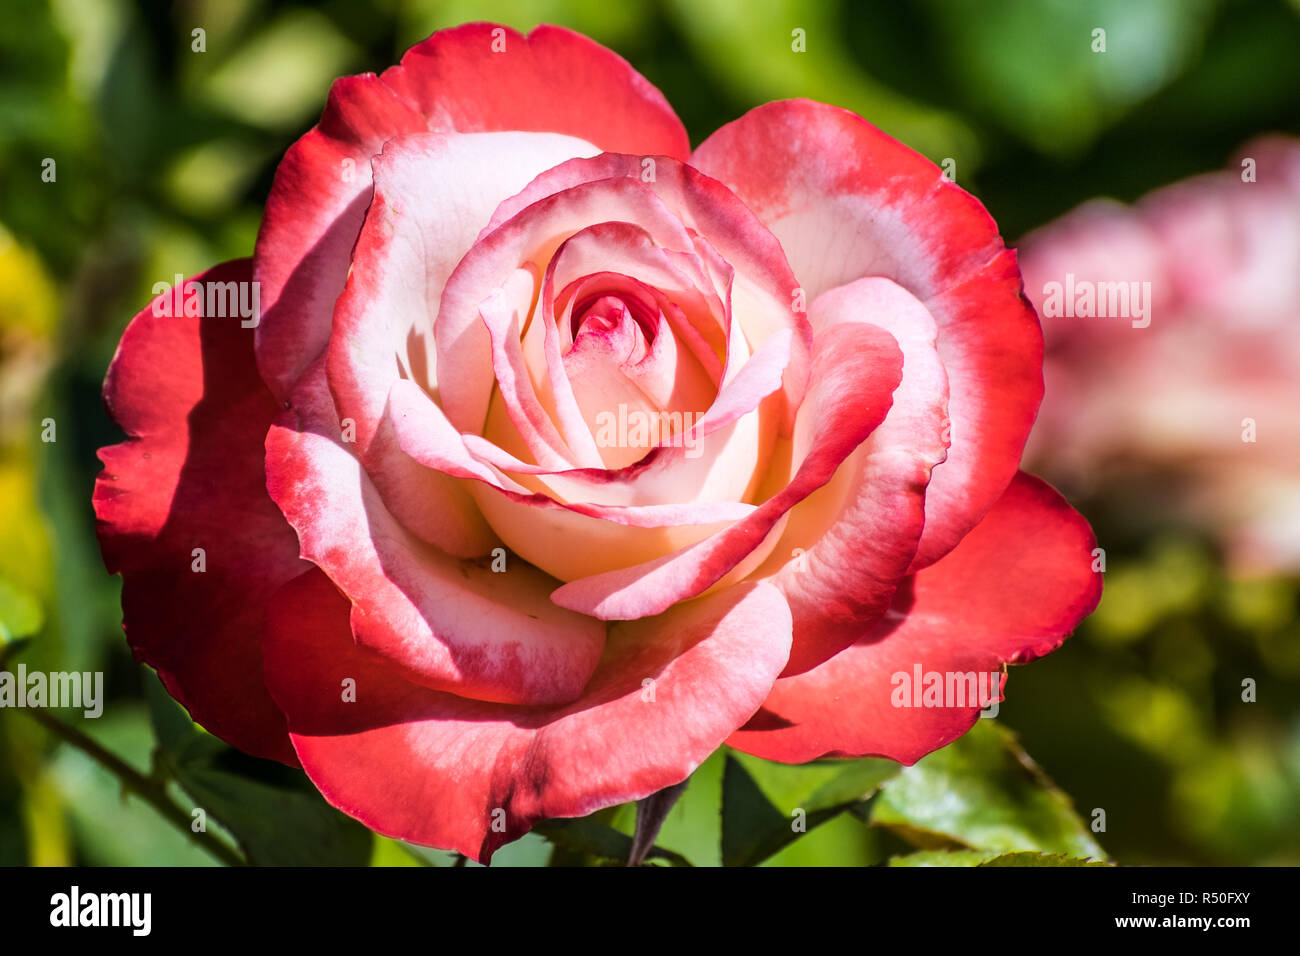 Close up of rose avec velours rouge et blanc à pétales, fleurissent dans la San Jose Municipal Rose Garden sur une journée ensoleillée, en Californie Banque D'Images